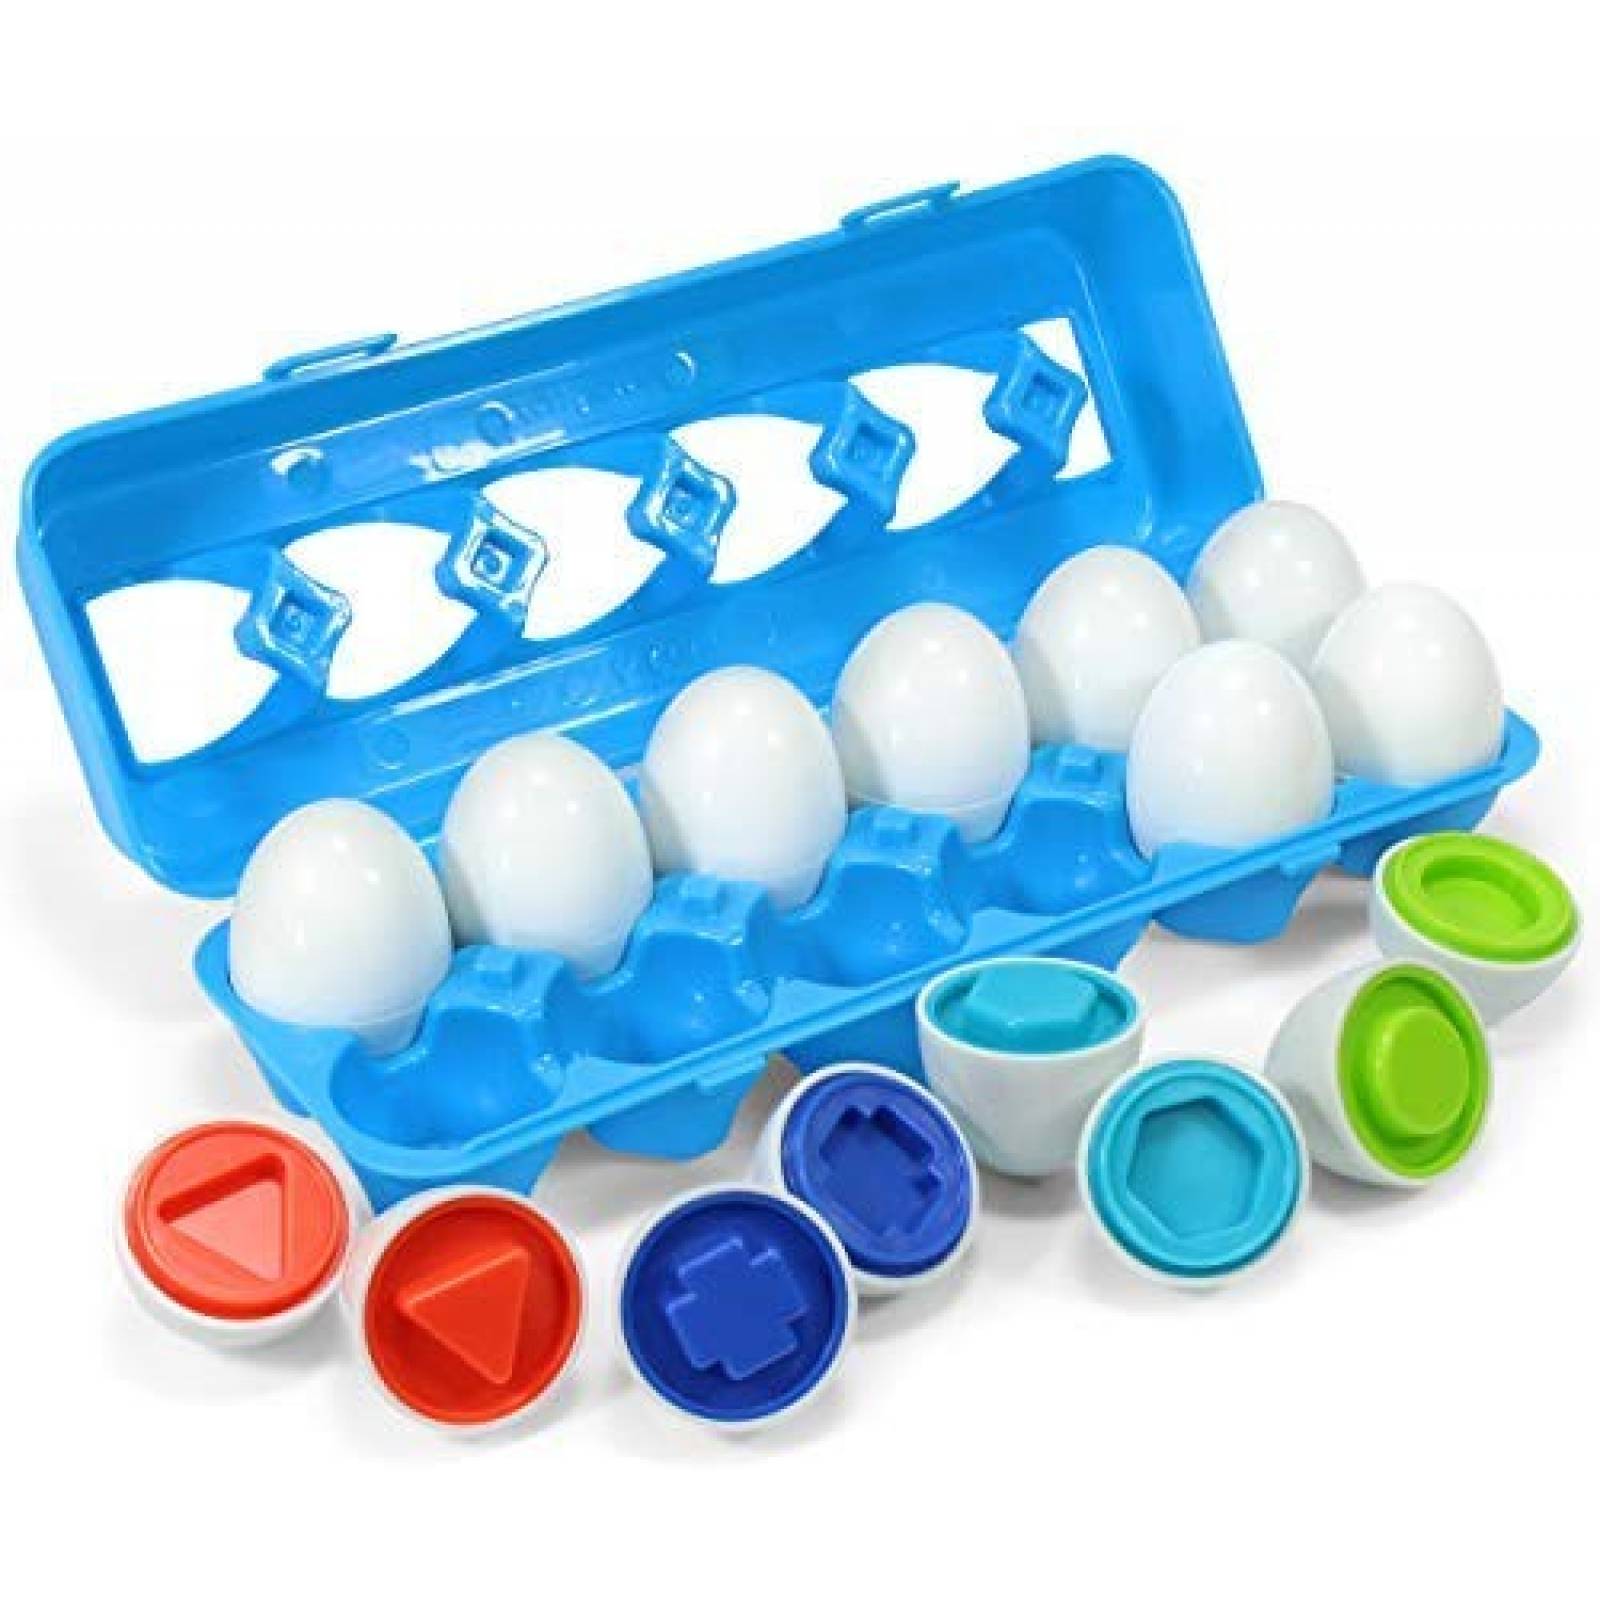 Juguete educativo Kidzlane huevos clasificar formas, colores